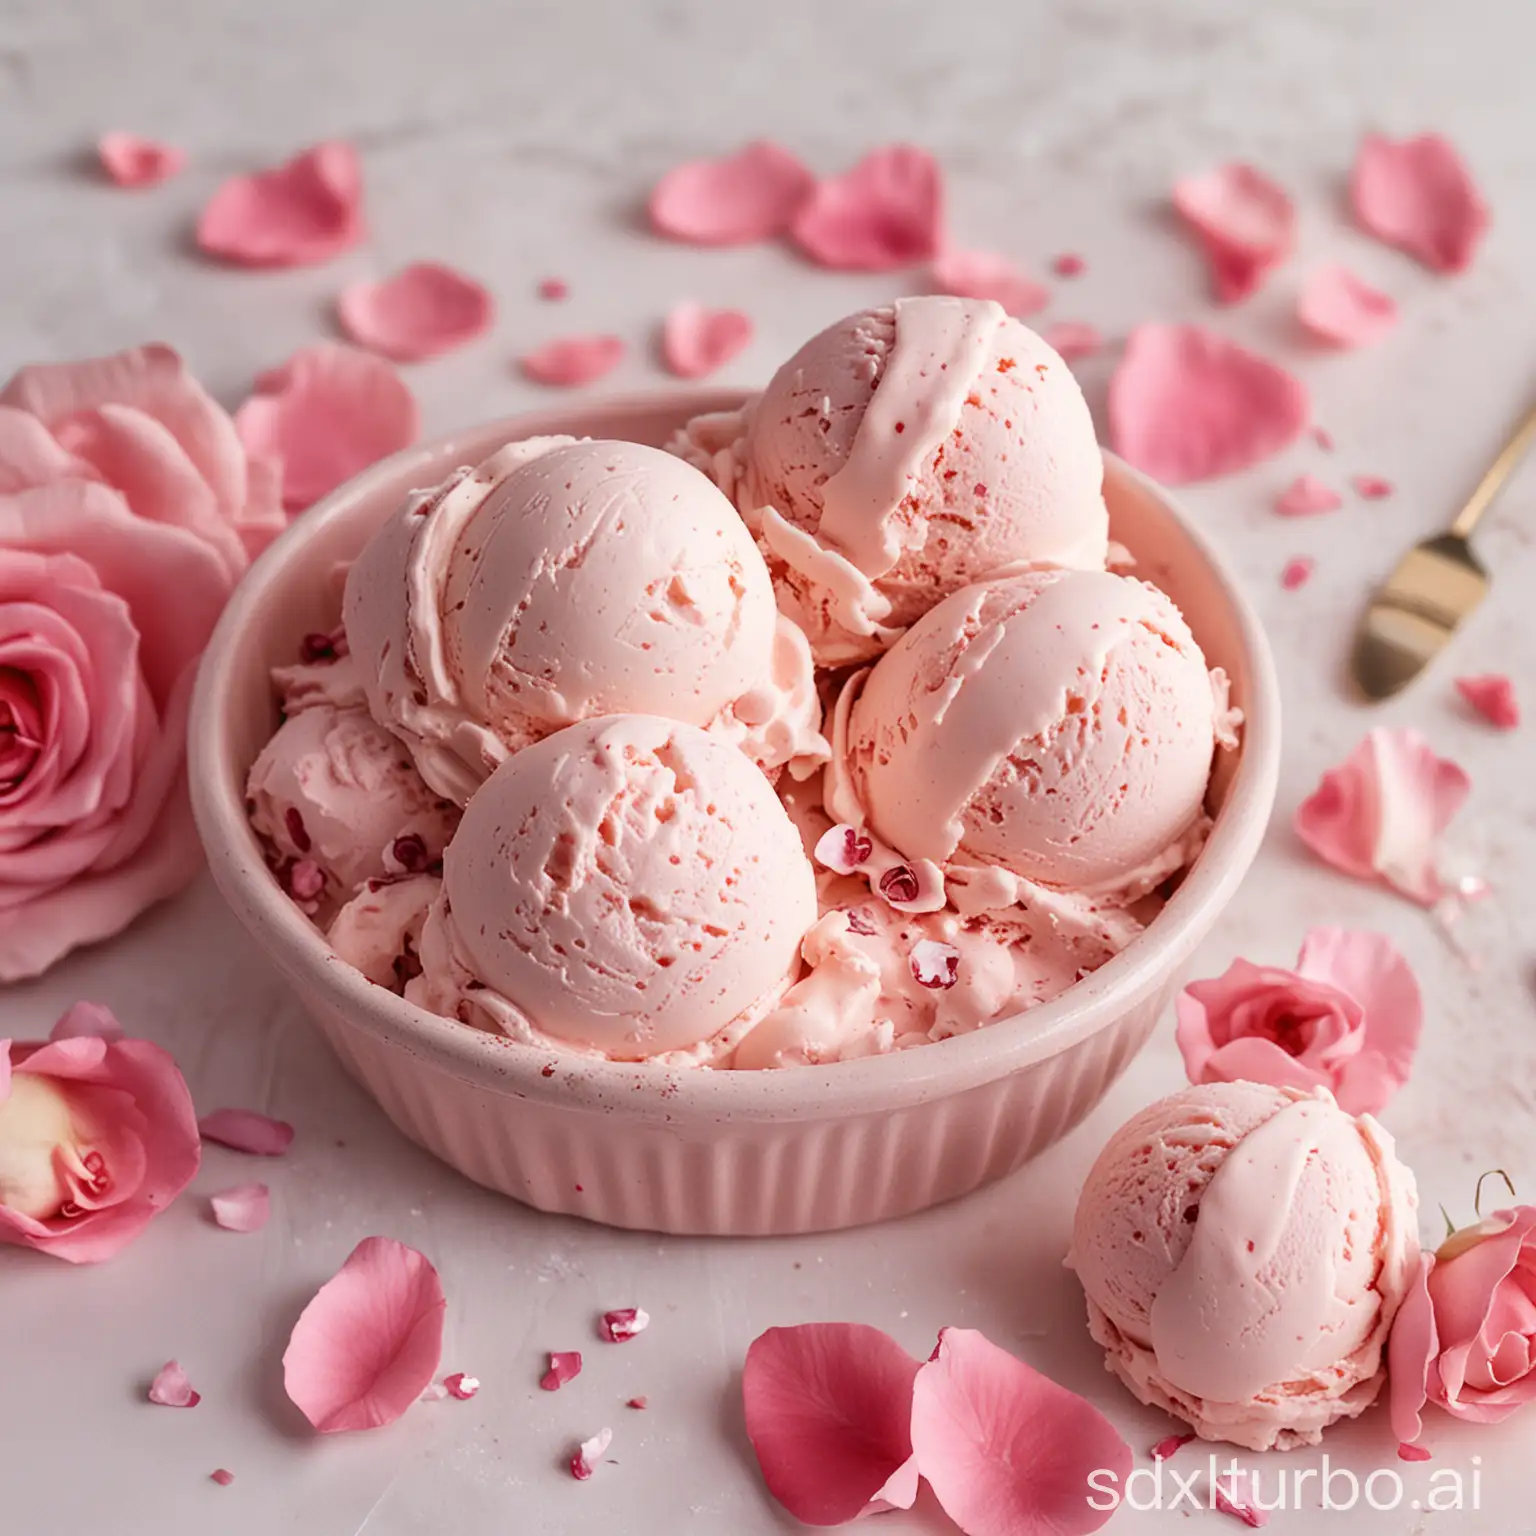 浅粉色的冰淇淋上轻轻散落着片片鲜艳的玫瑰花瓣，不仅色彩柔和美丽，还散发着淡淡的玫瑰香气。每一勺都融合了冰淇淋的甜与玫瑰的雅，仿佛在品尝一个浪漫的故事。